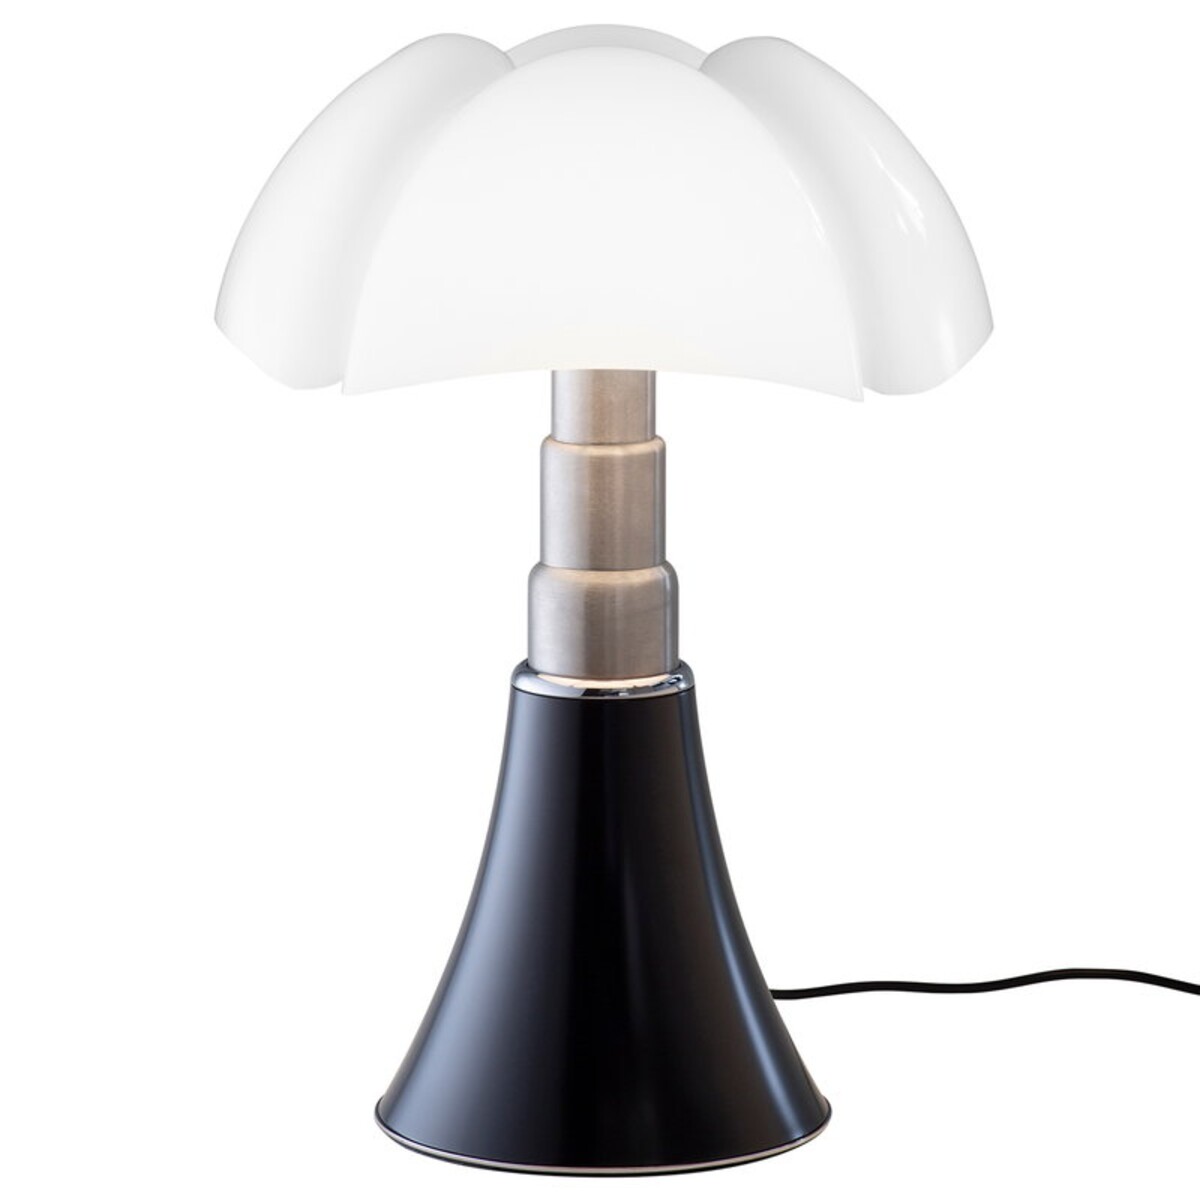 Mushroom lamps 